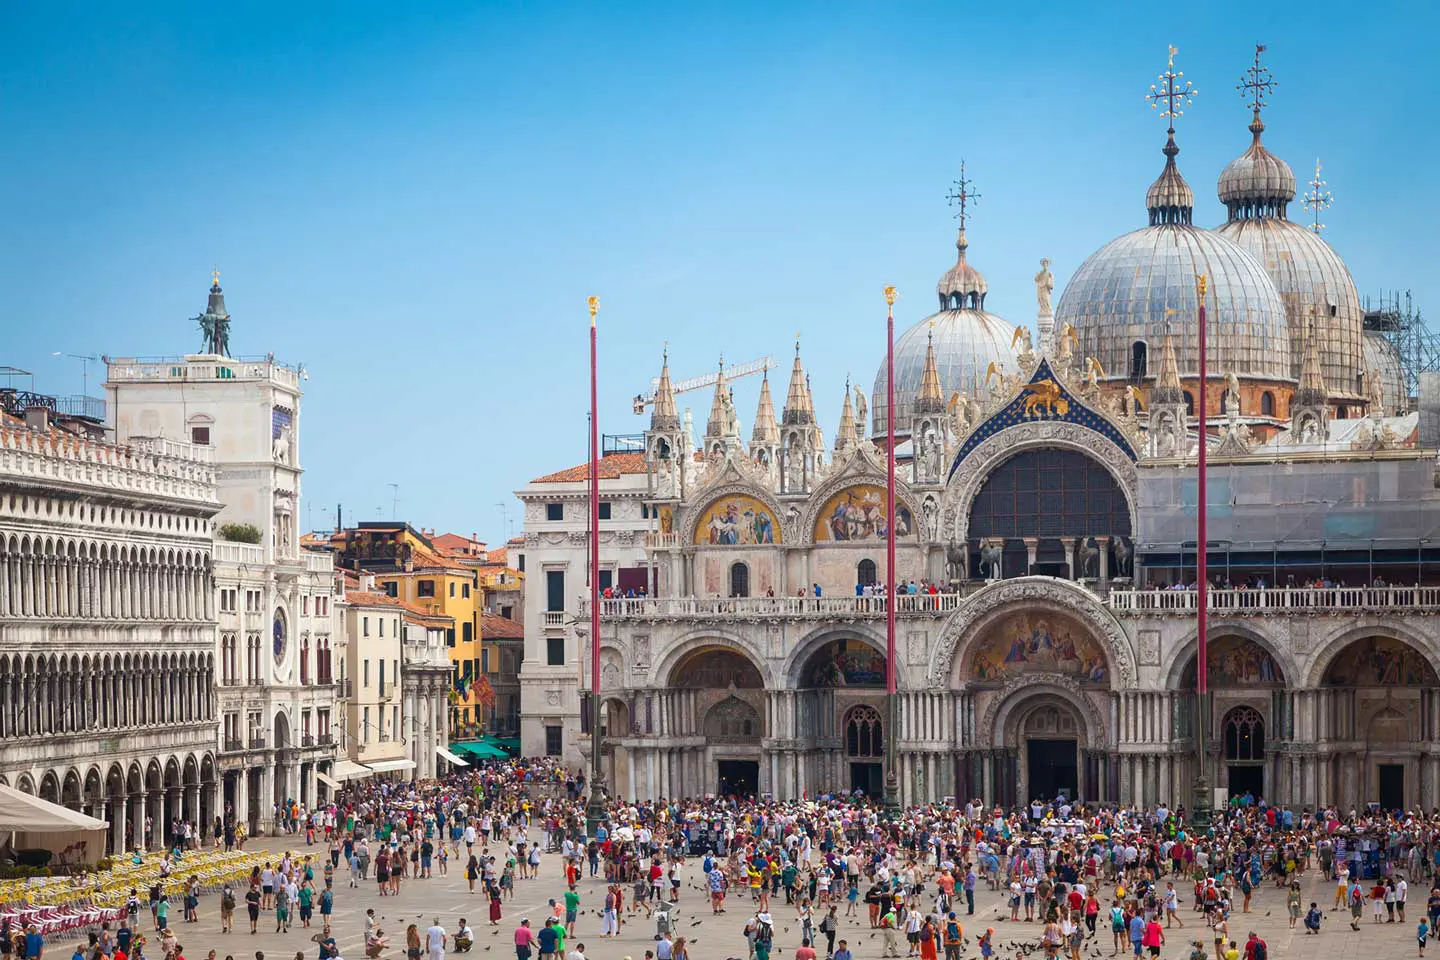 Tourism of Venice